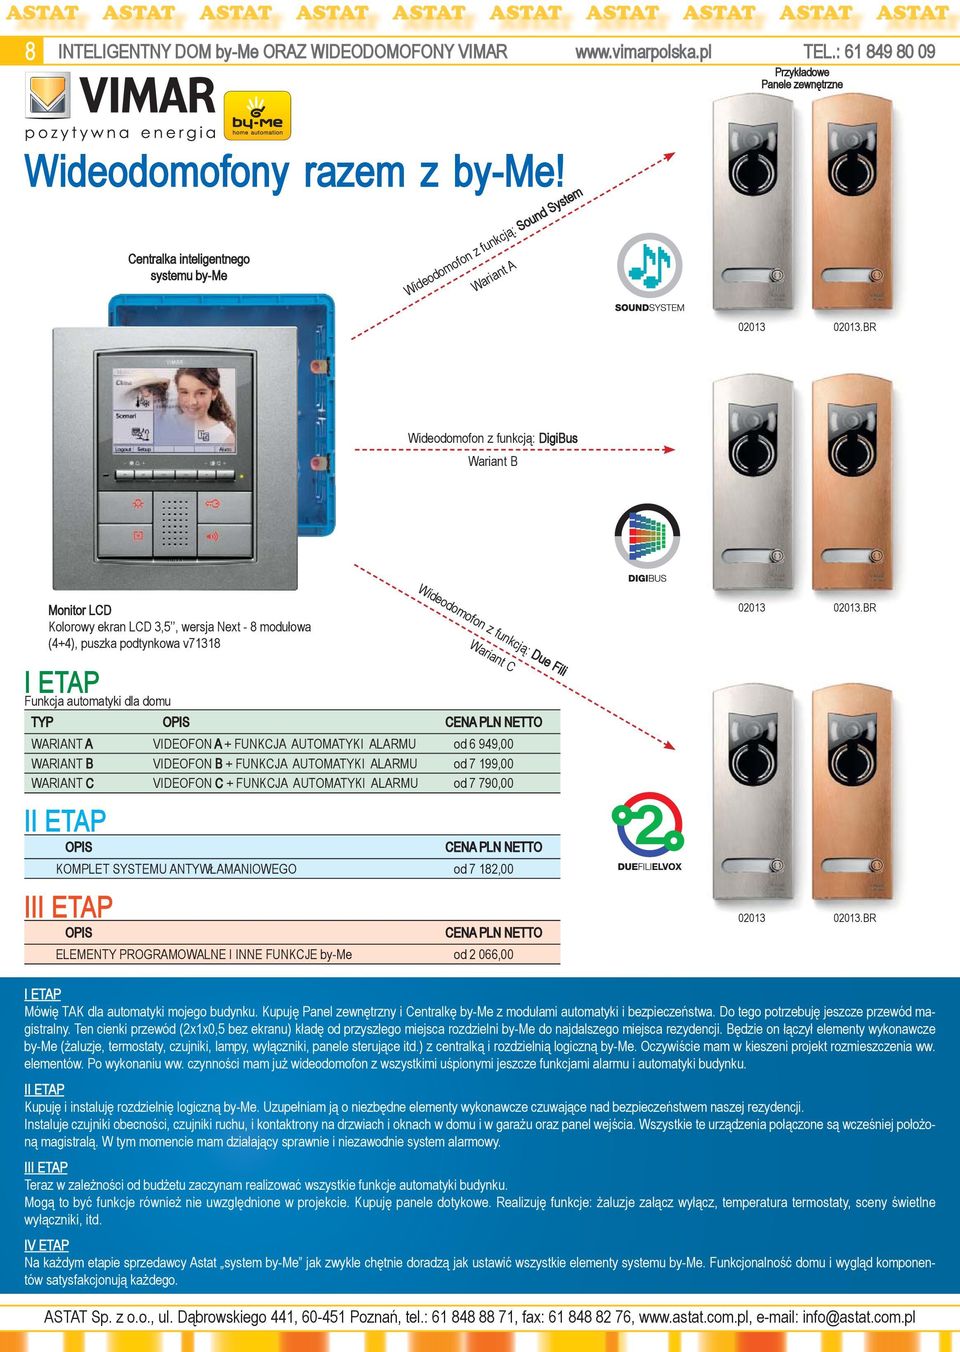 BR Wideodomofon z funkcją: DigiBus Wariant B Monitor LCD Kolorowy ekran LCD 3,5, wersja Next - 8 modułowa (4+4), puszka podtynkowa v71318 I ETAP Funkcja automatyki dla domu TYP II ETAP III ETAP OPIS